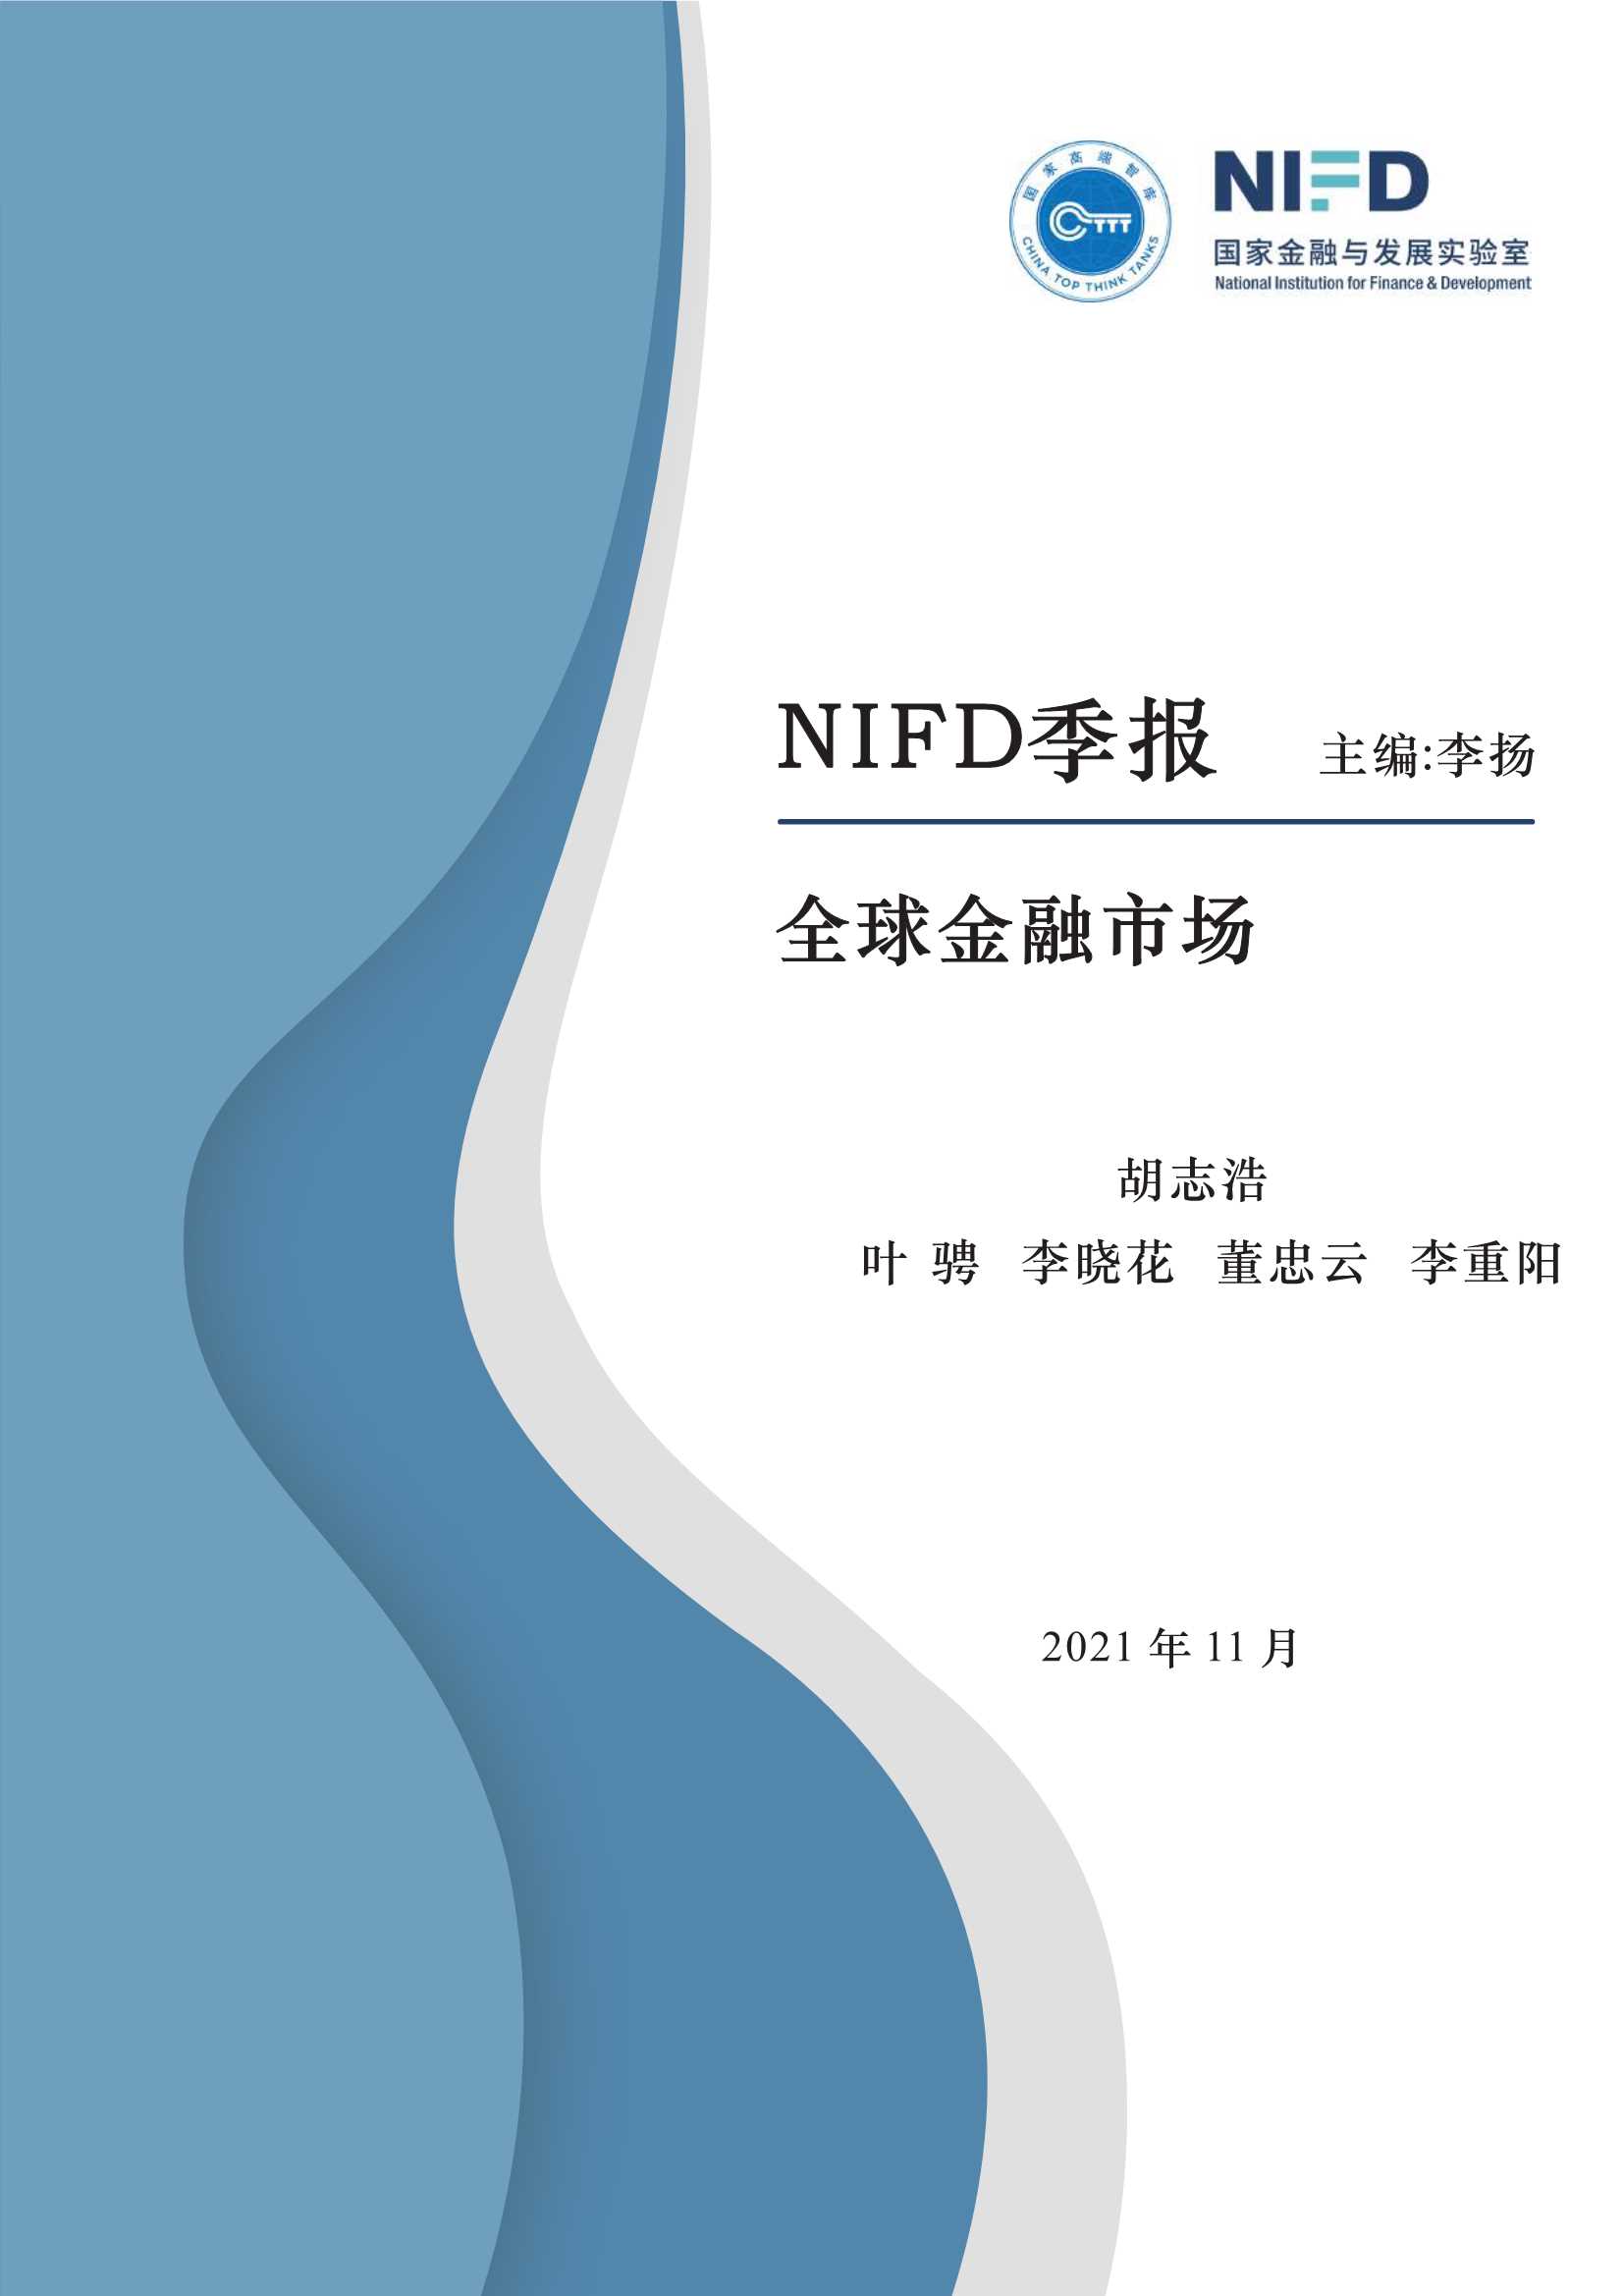 NIFD-2021Q3全球金融市场-2021.11-45页